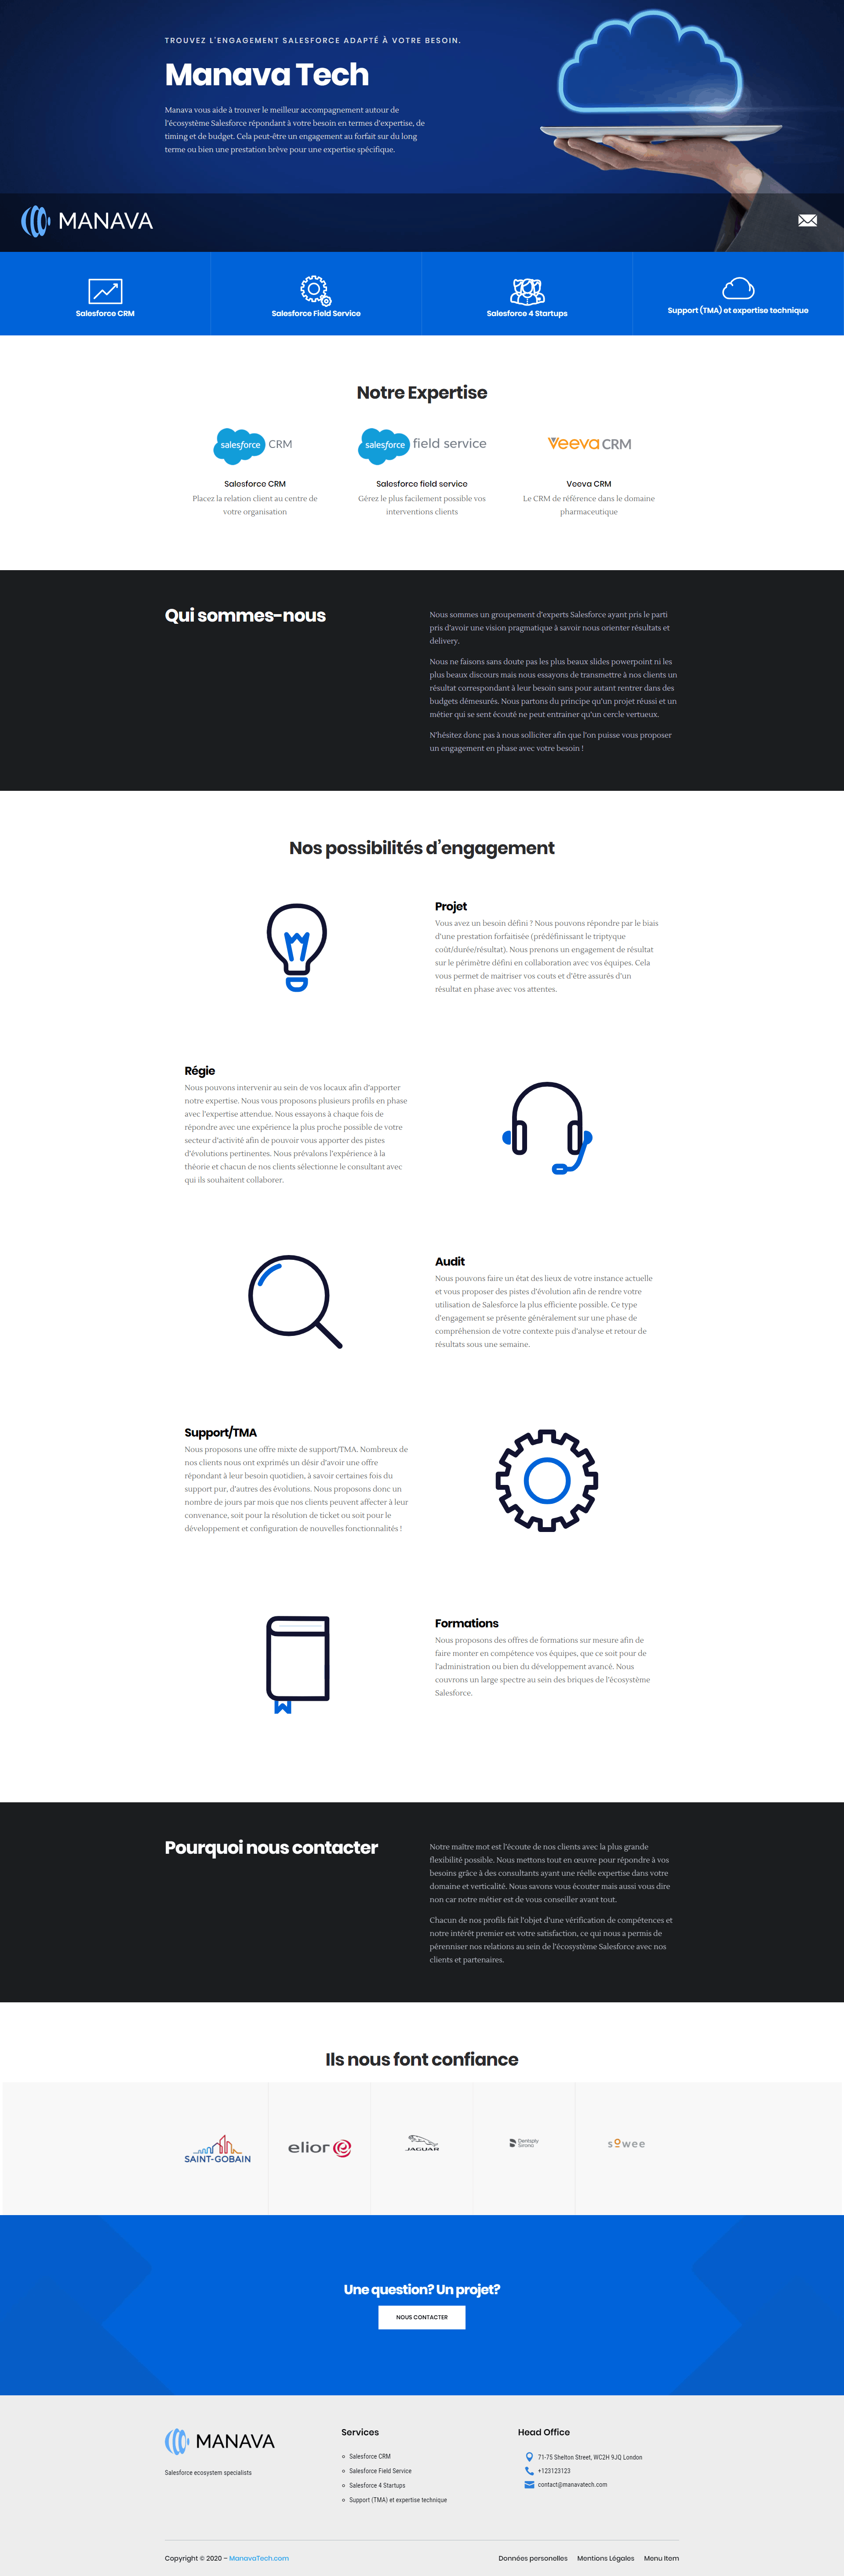 ManavaTech homepage